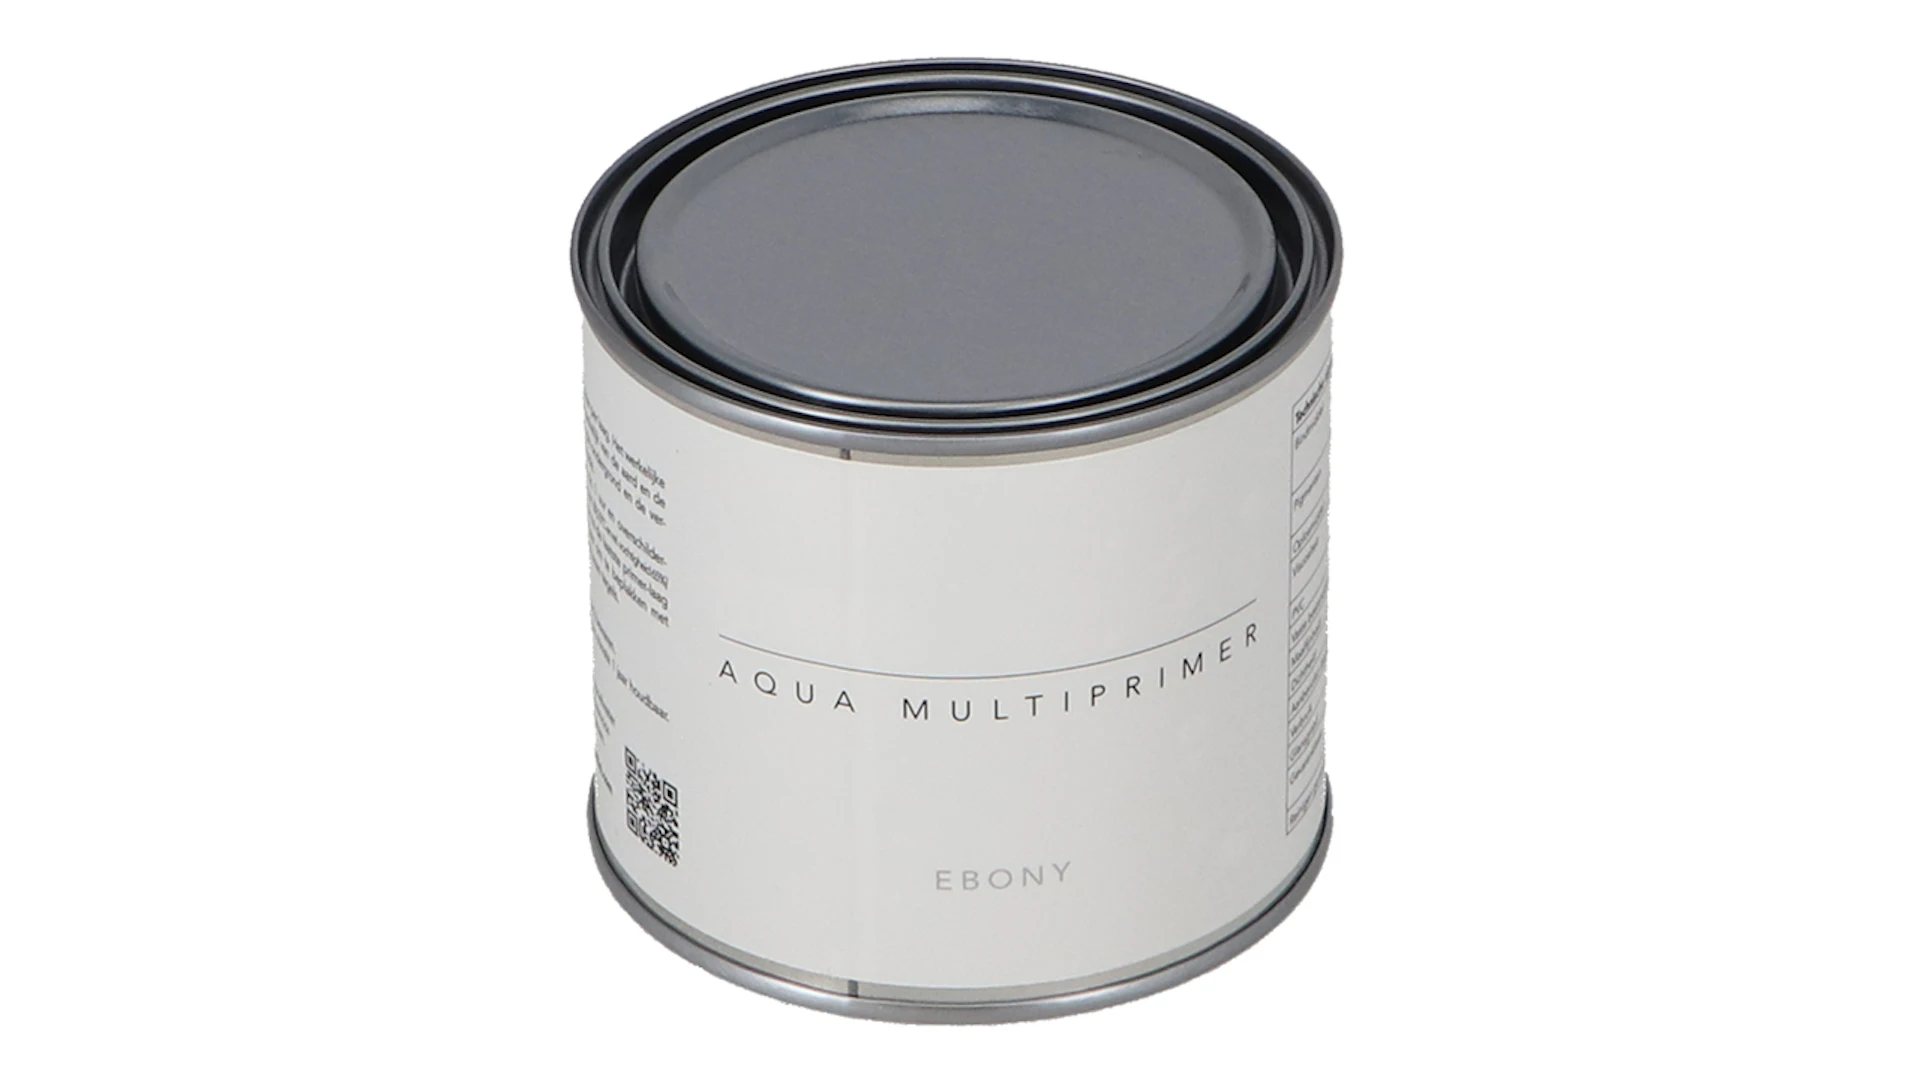 Aqua Multiprimer - Ebony